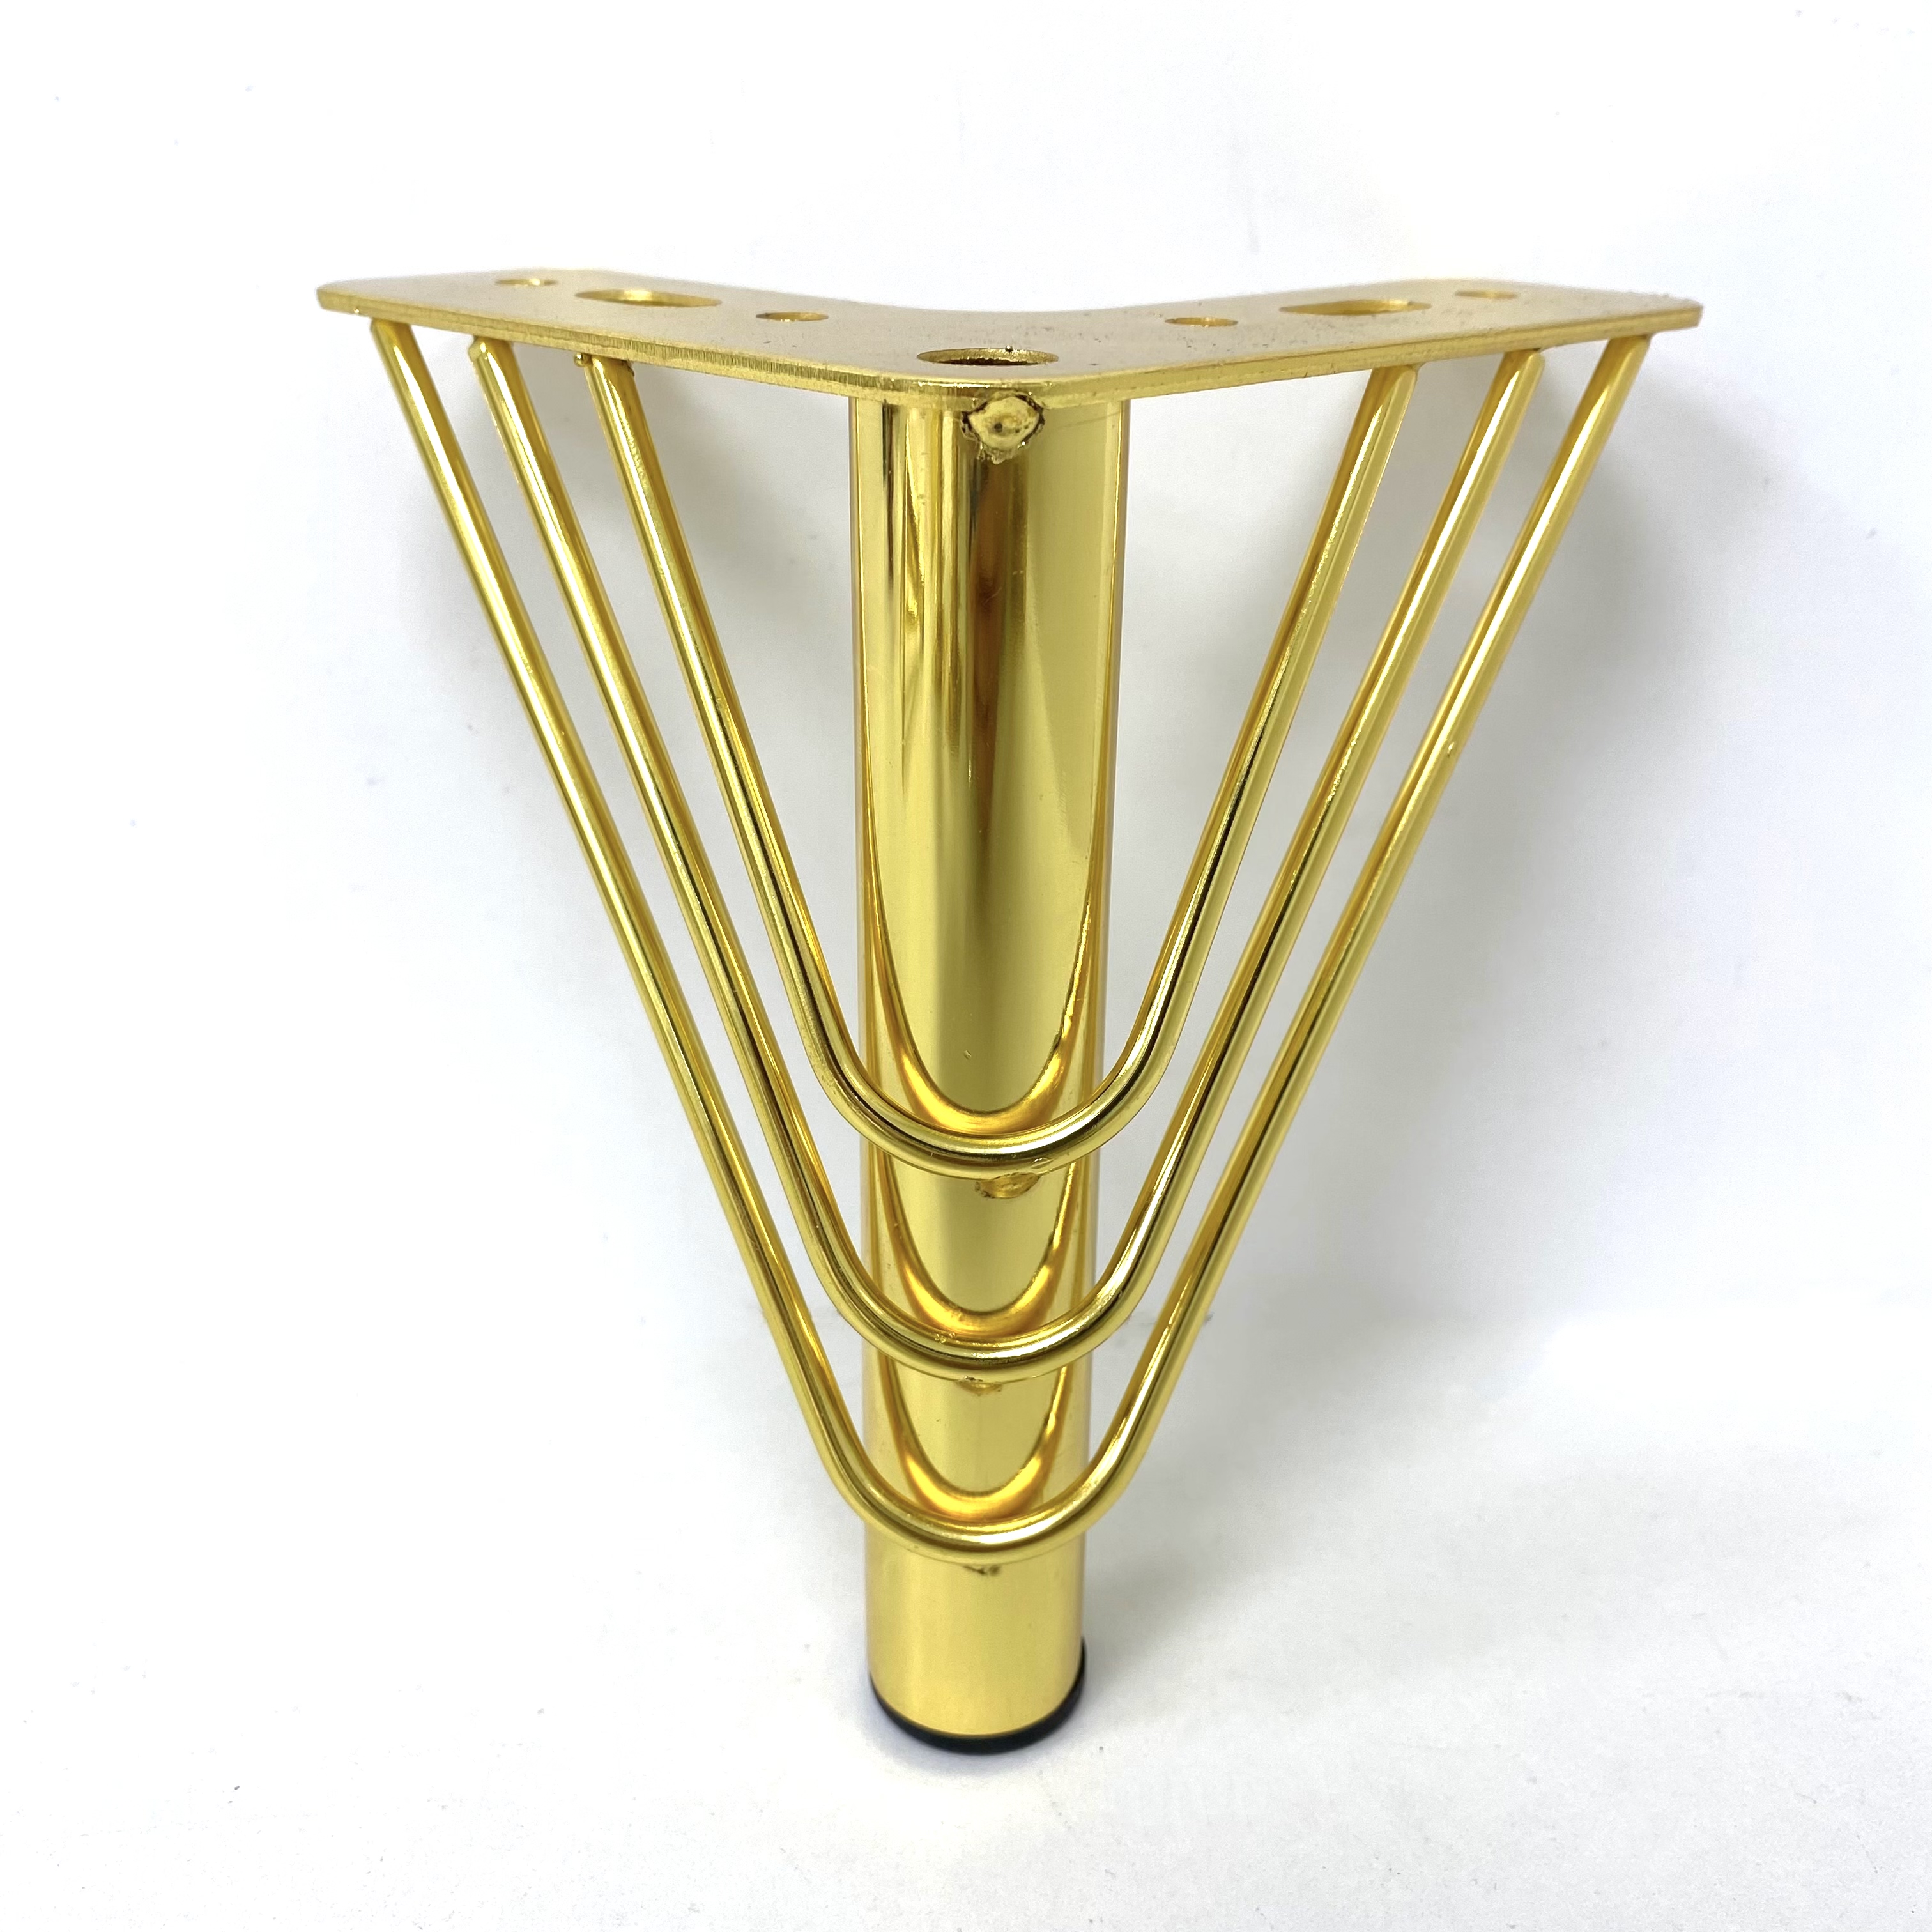 ขาโซฟา คอเนอร์ สามเหลี่ยมทองคำสำหรับโซฟาเฟอร์นิเจอร์